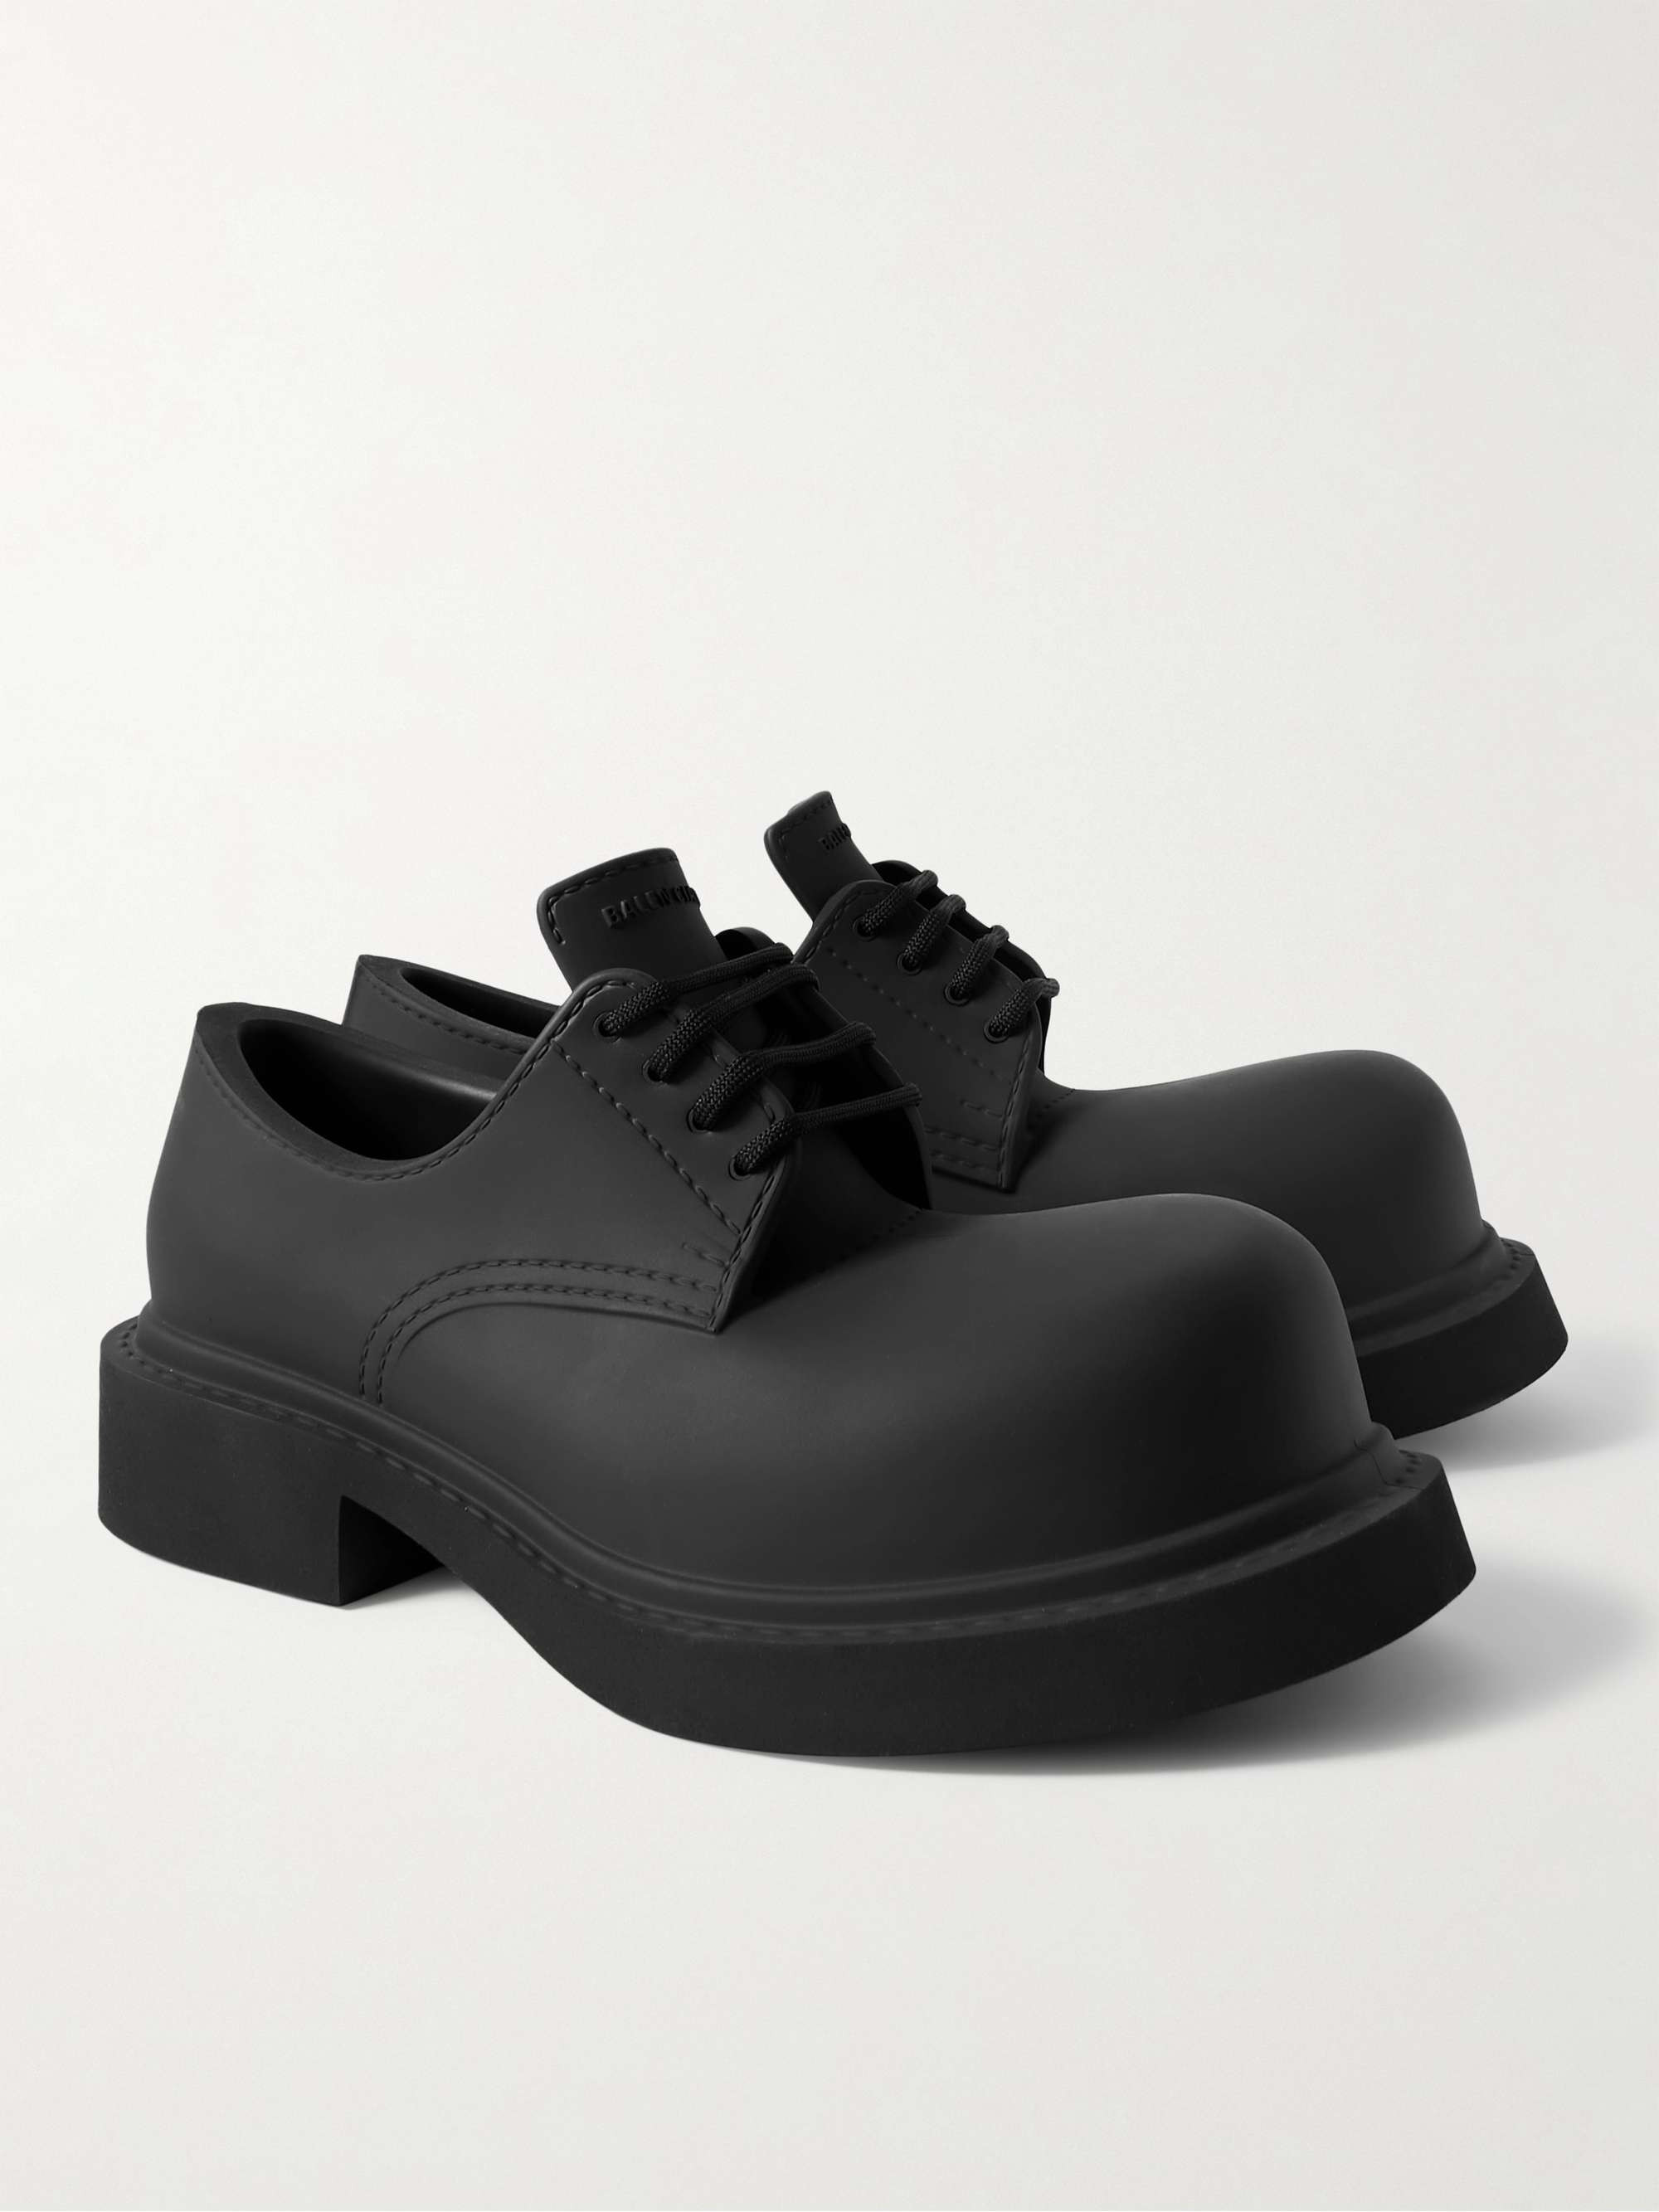 BALENCIAGA Rubber Derby Shoes for Men | MR PORTER